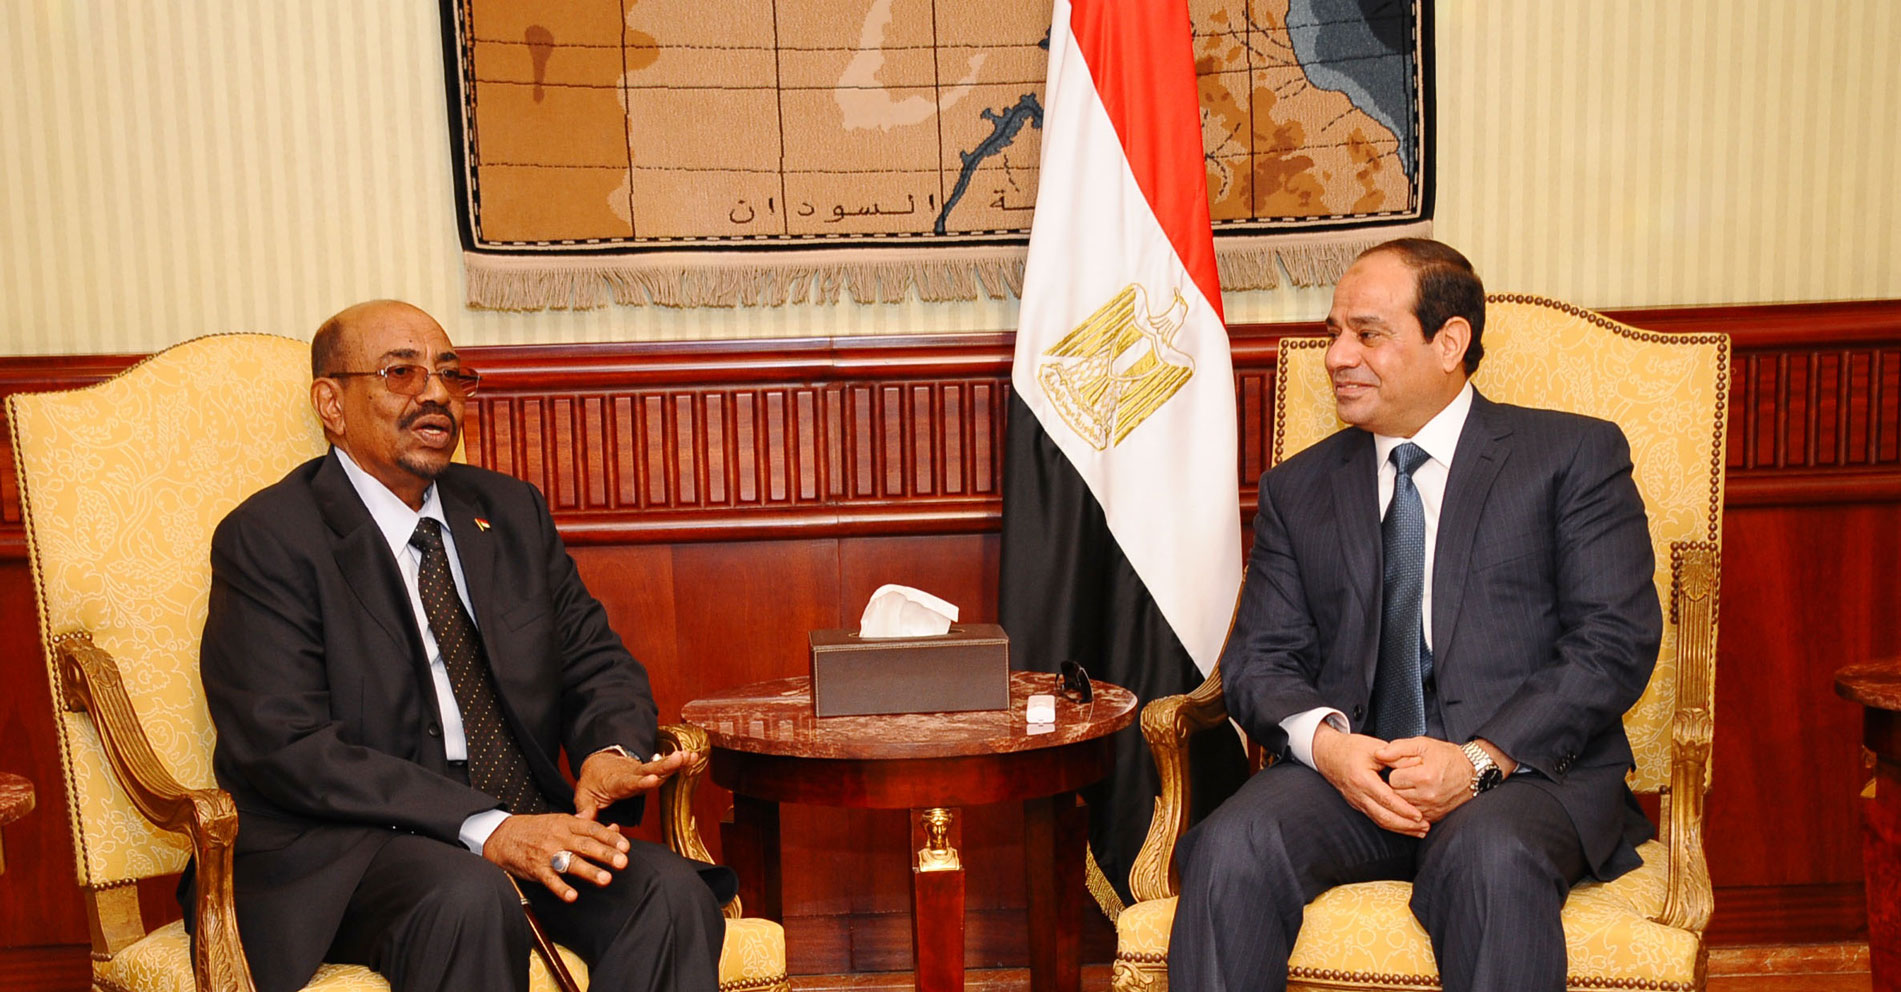 الرئيس السوداني عمر البشير مع الرئيس المصري عبدالفتاح السيسي في لقاء سابق